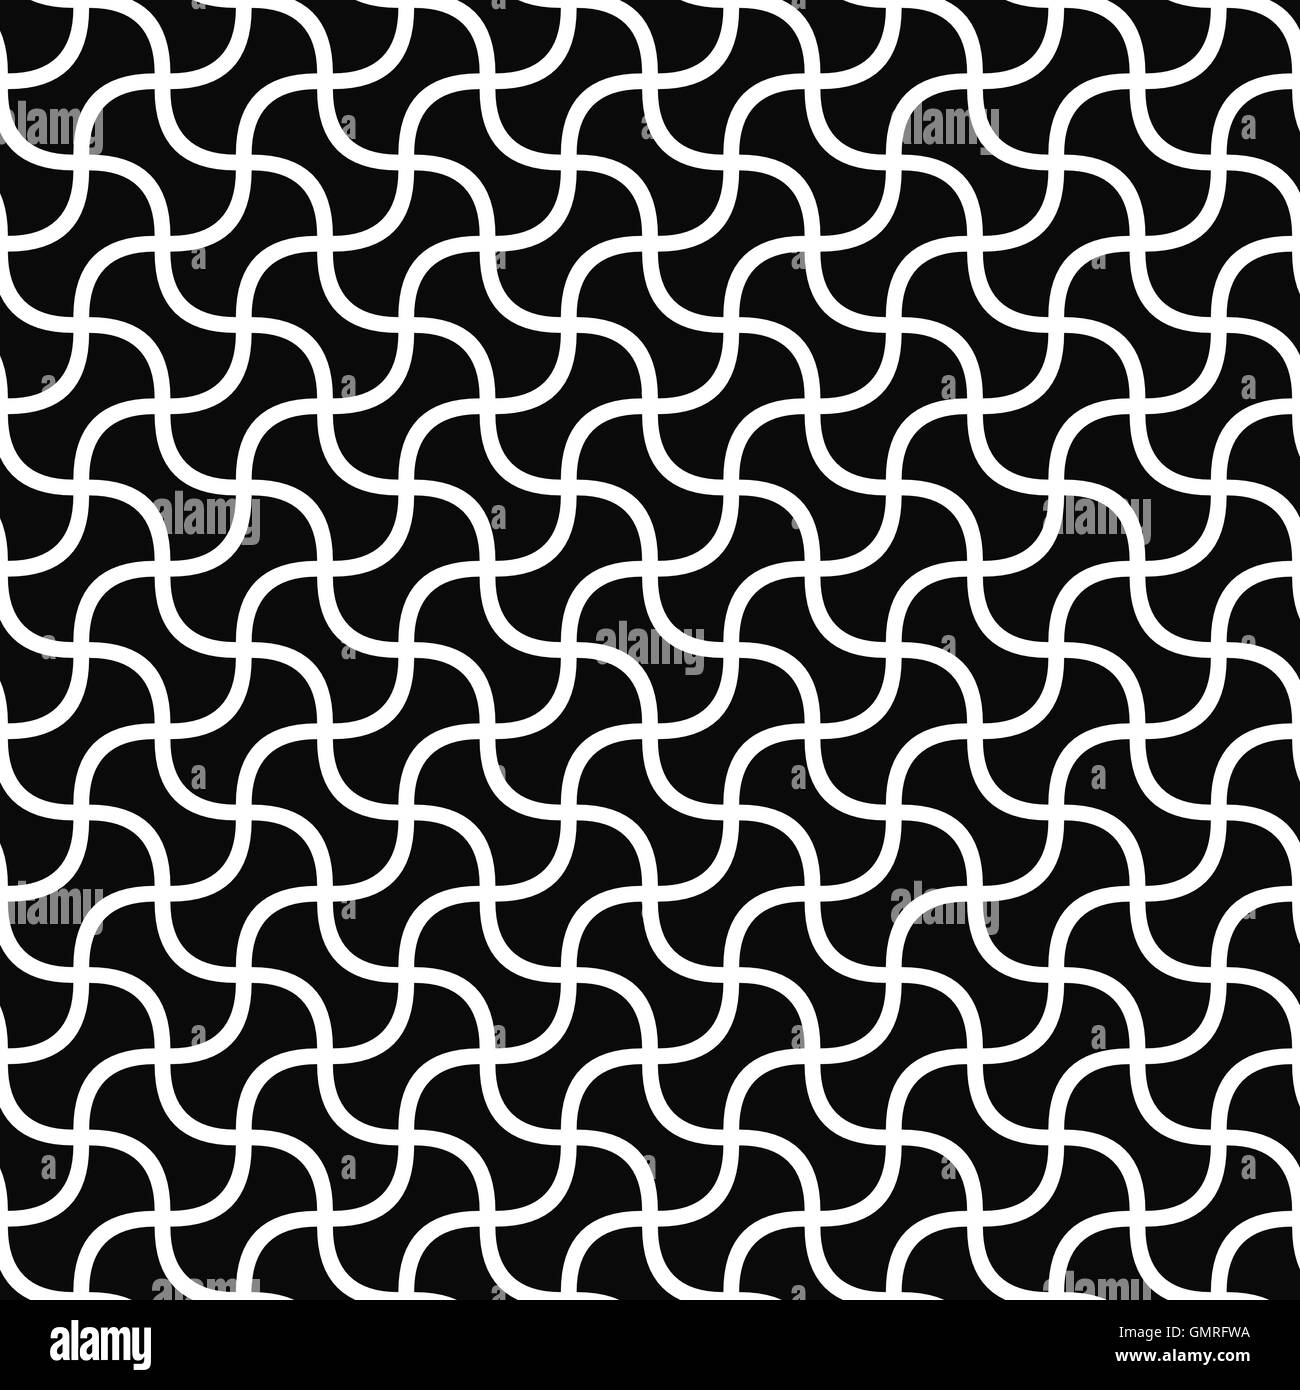 Monochromatische nahtlose gebogene Form Muster Stock Vektor